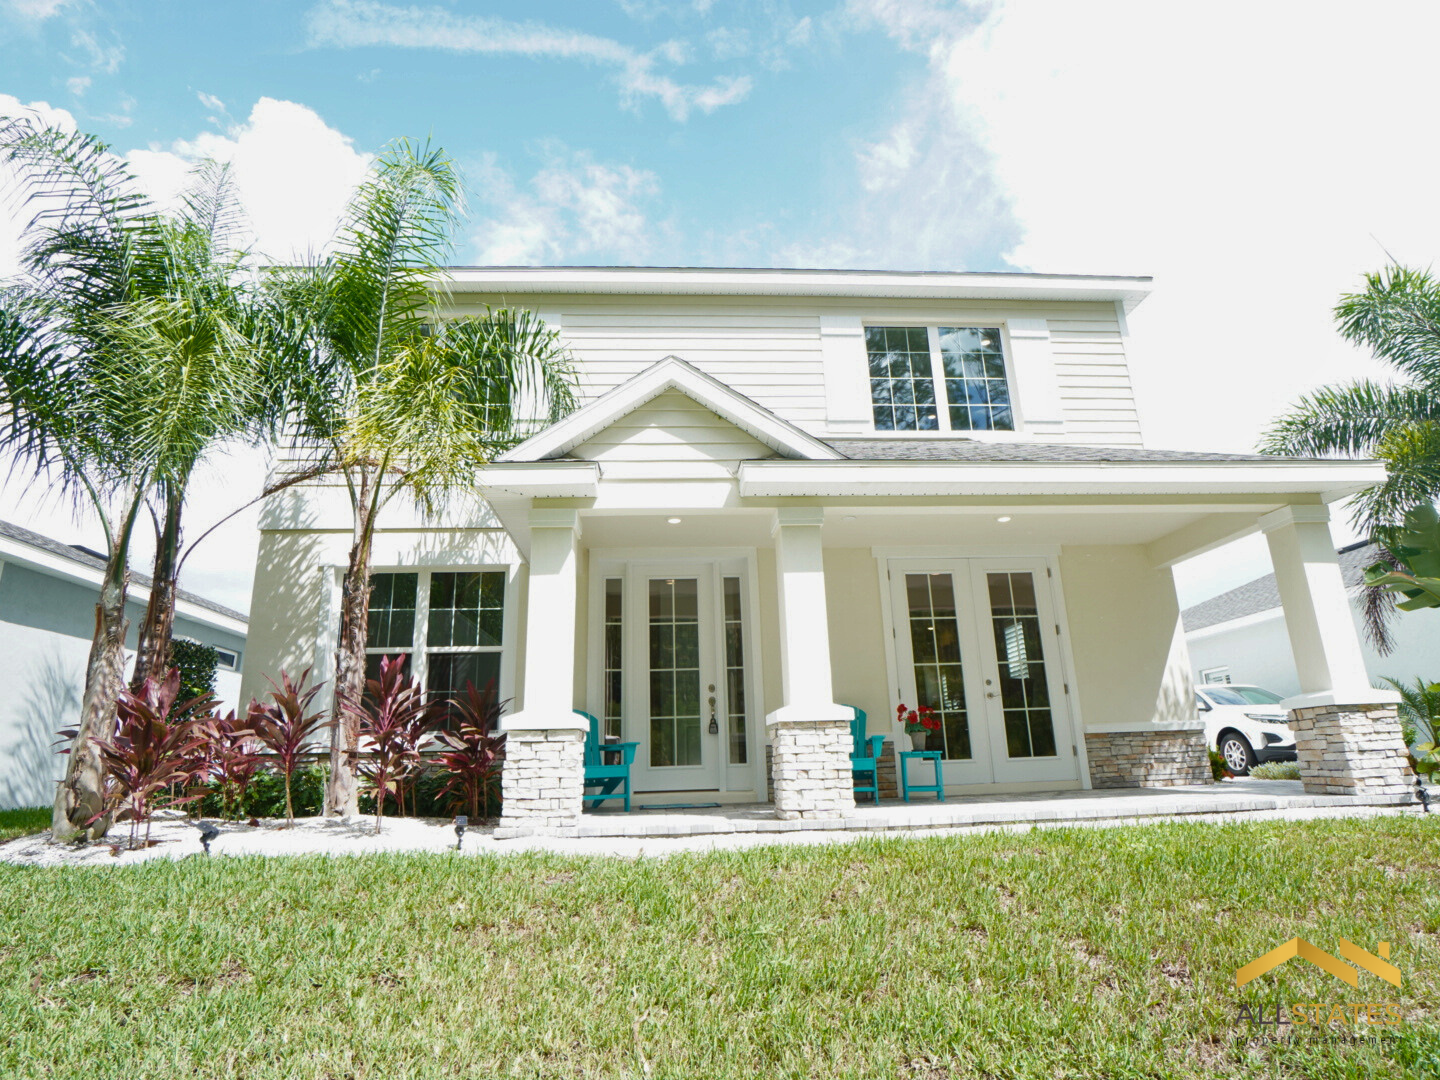 Photo of property: 3100 Meleto Blvd, New Smyrna Beach, FL, 32168